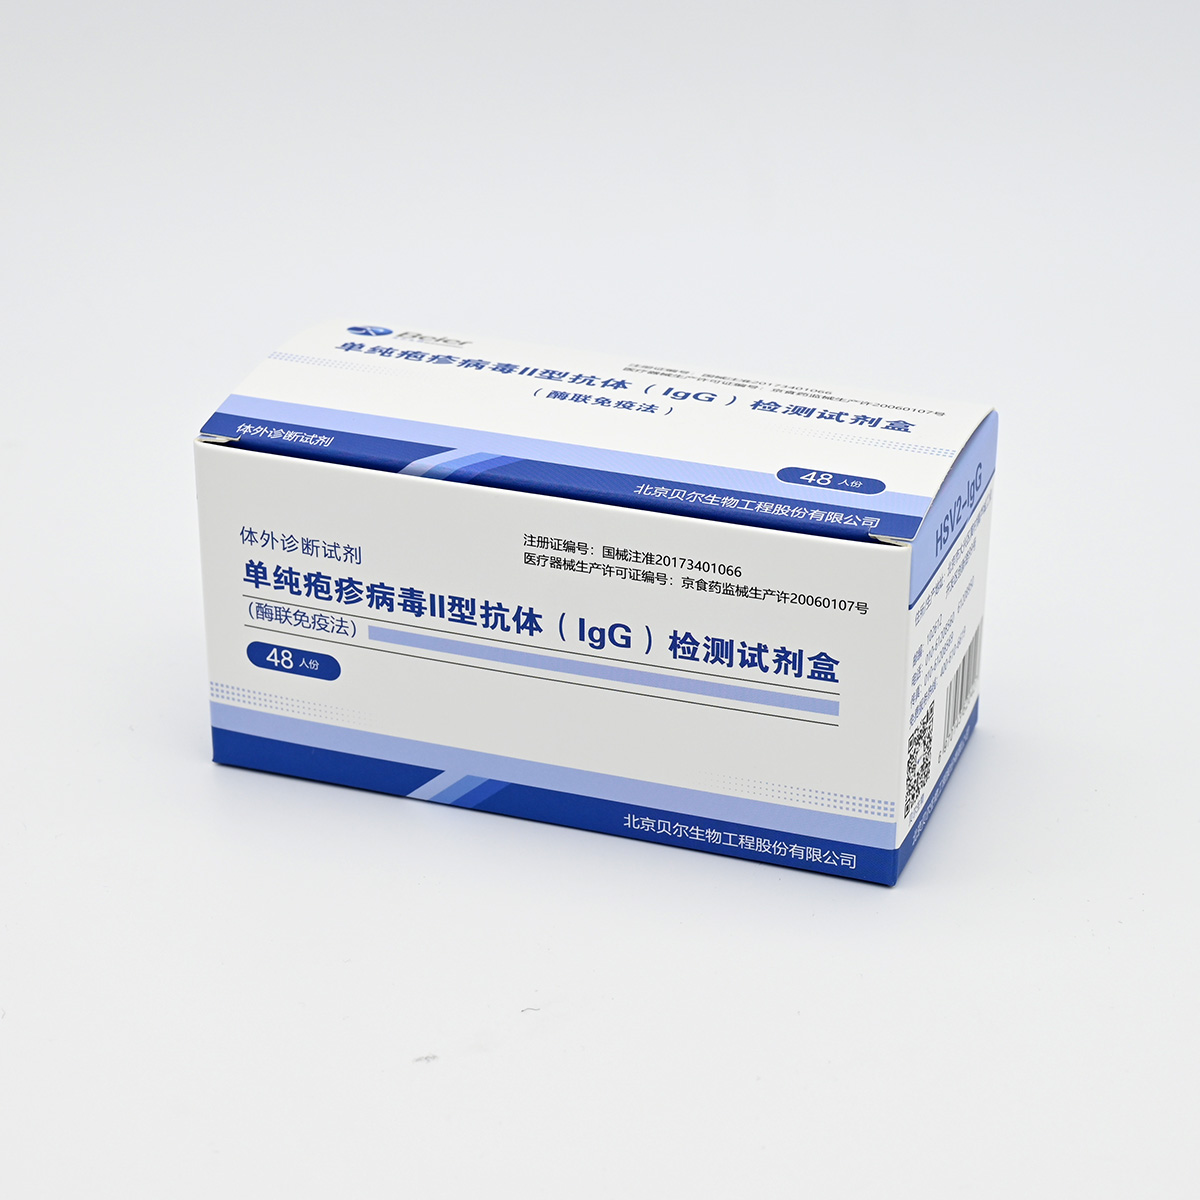 【贝尔】单纯疱疹病毒II型IgG抗体检测试剂盒(HSVII-IgG)(酶联免疫法)